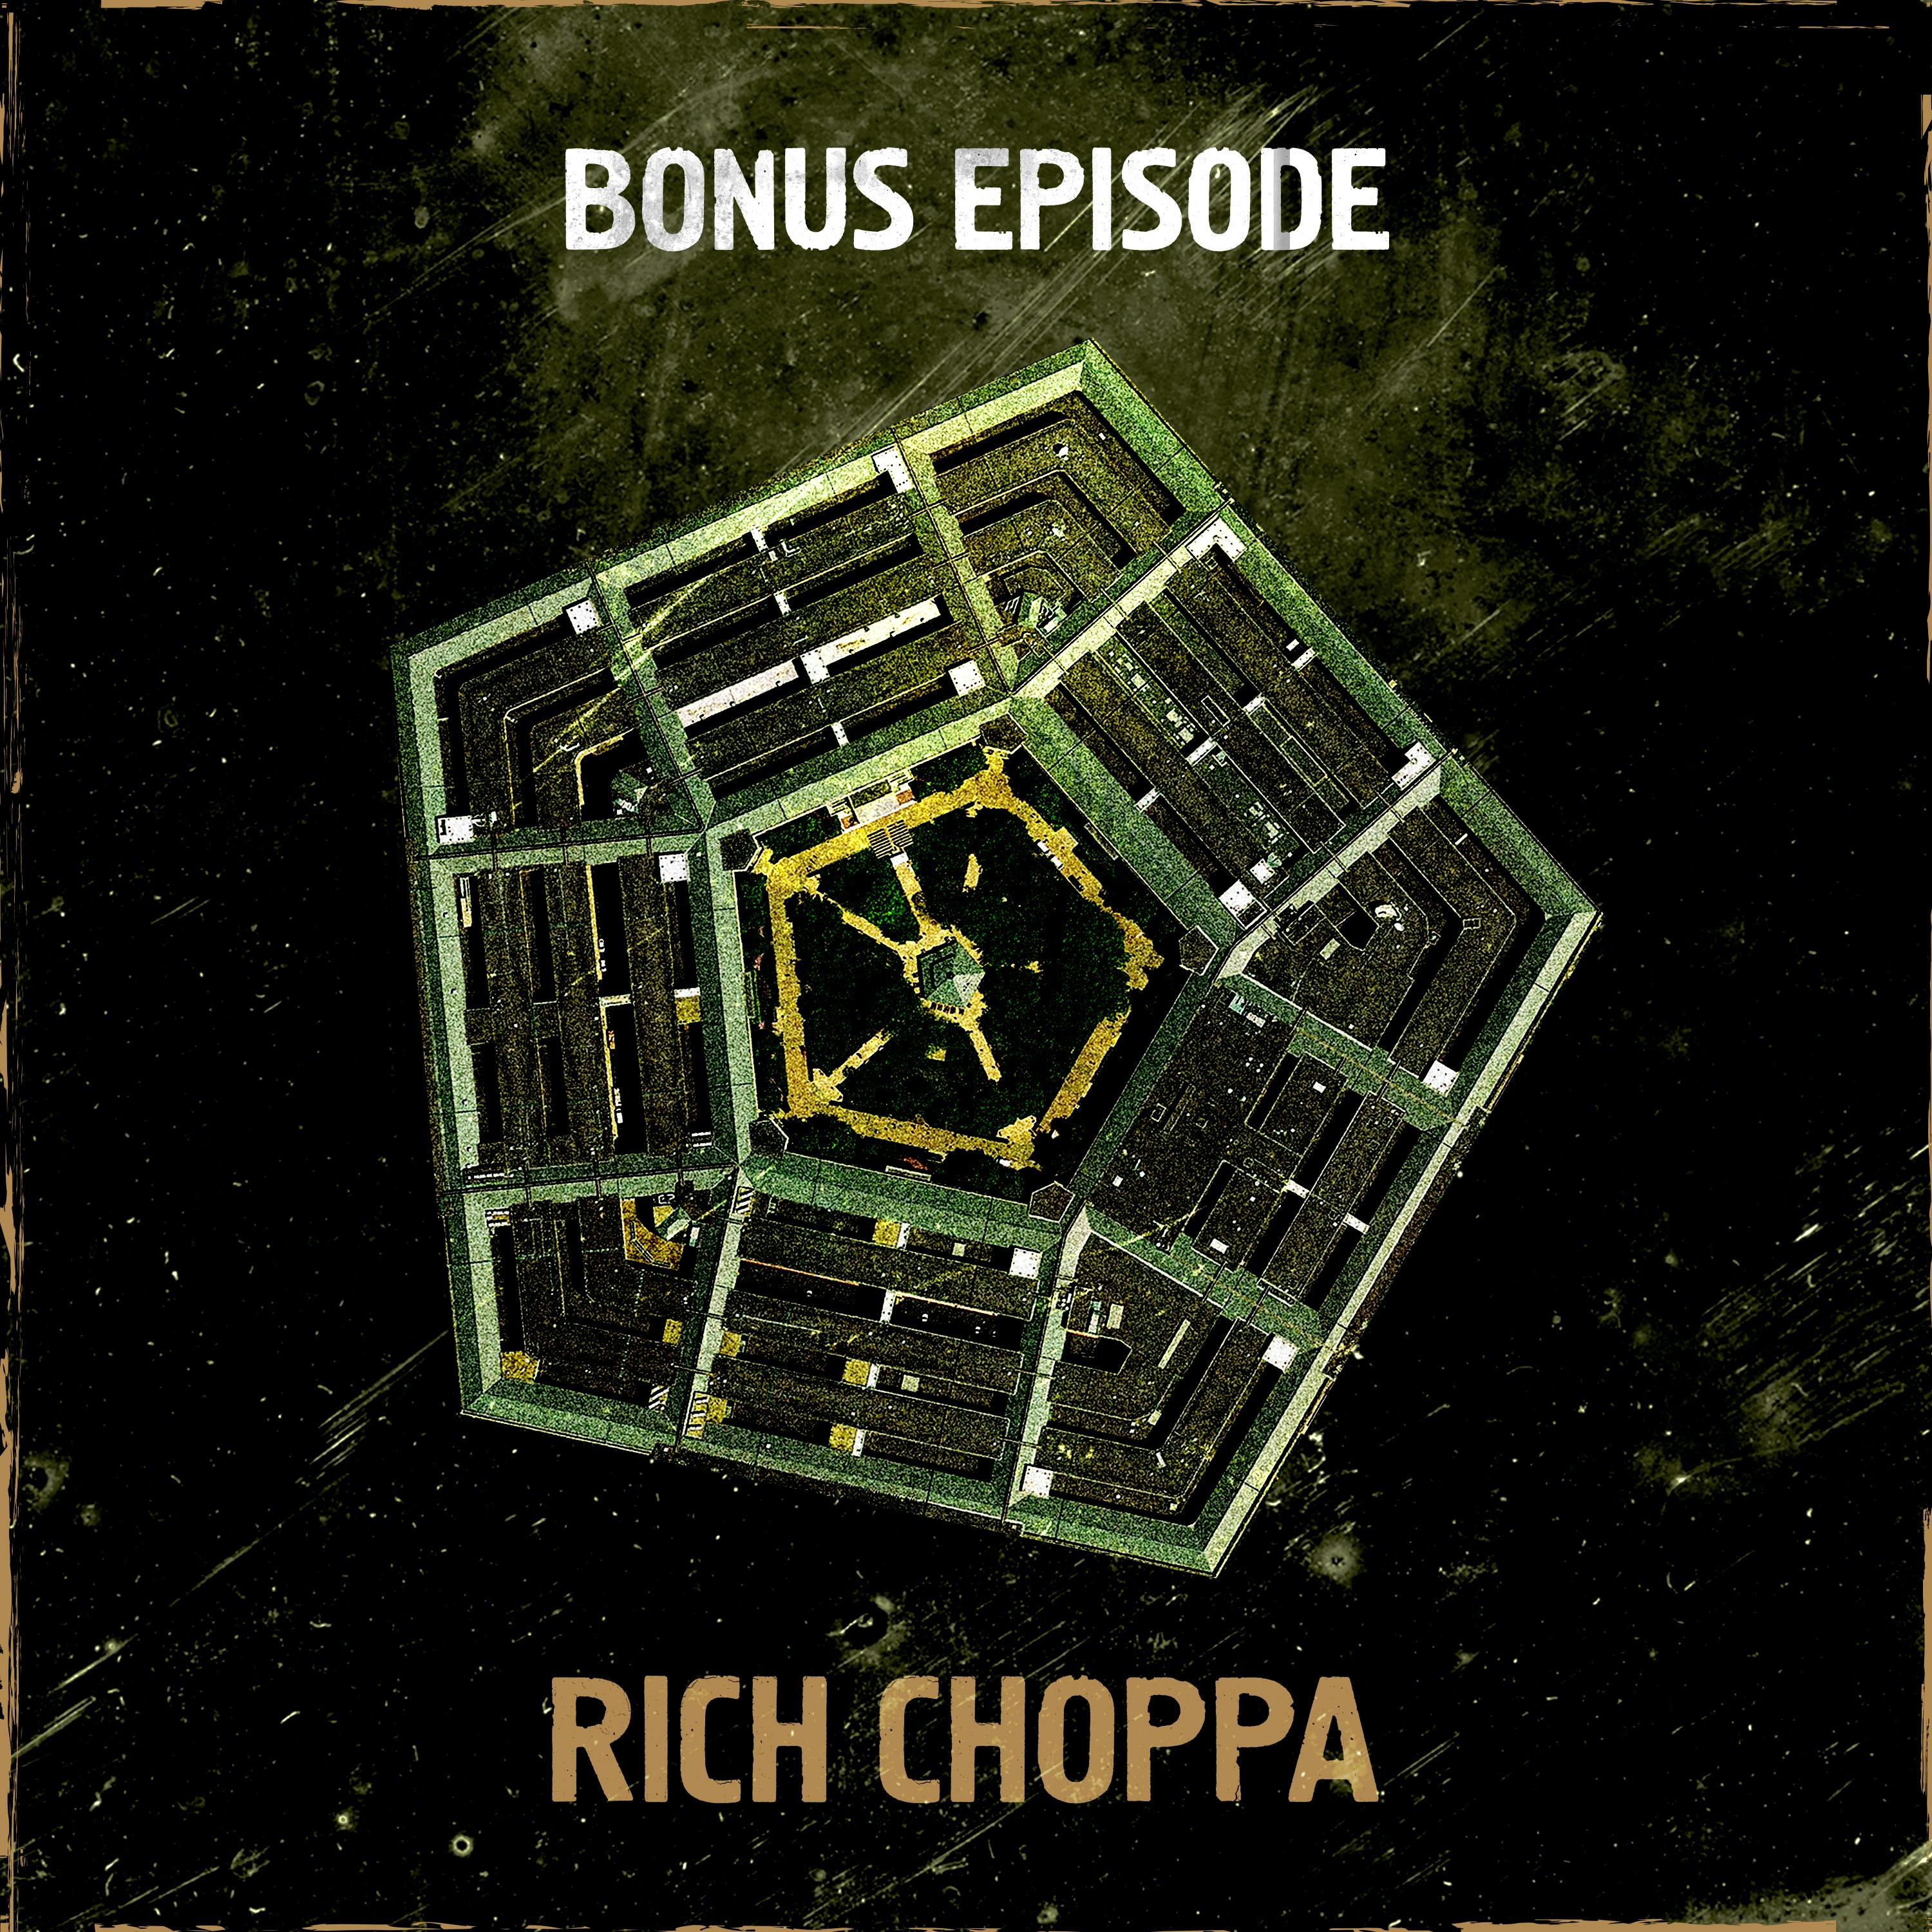 Meet the Host: Army Ranger Rich Choppa